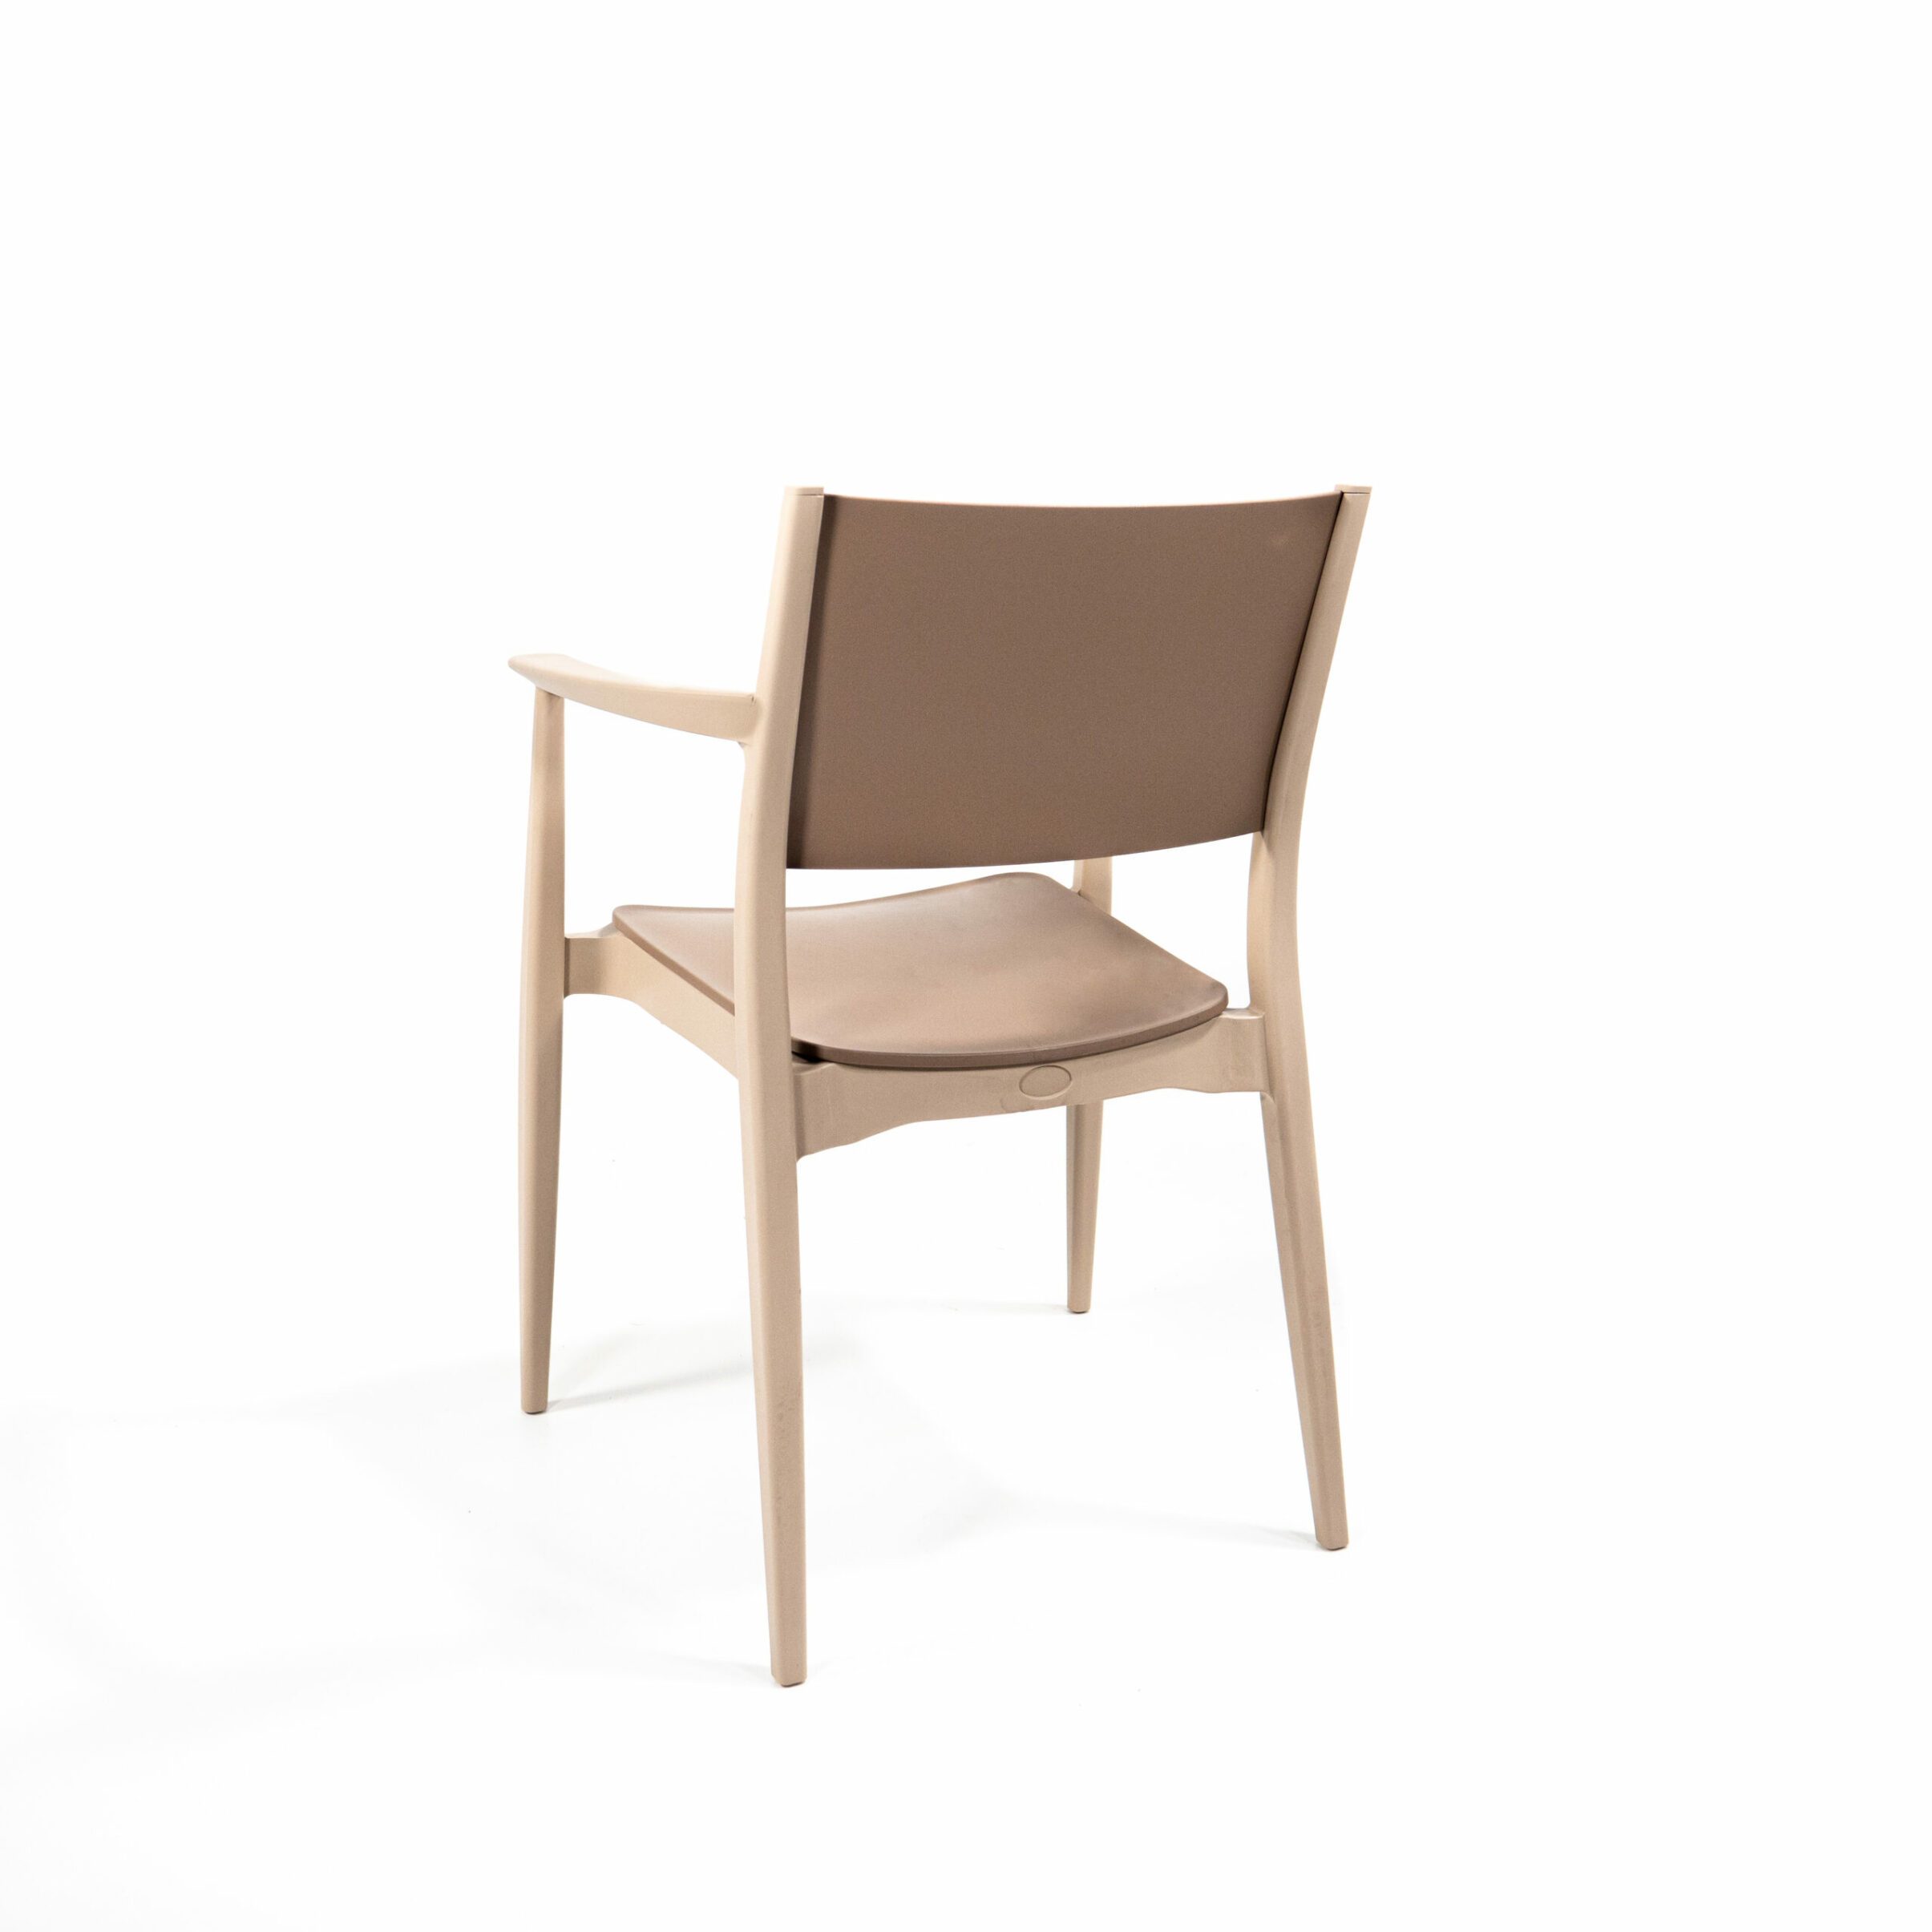 Clark chaise en plastique empilable, Cappuccino, 50928